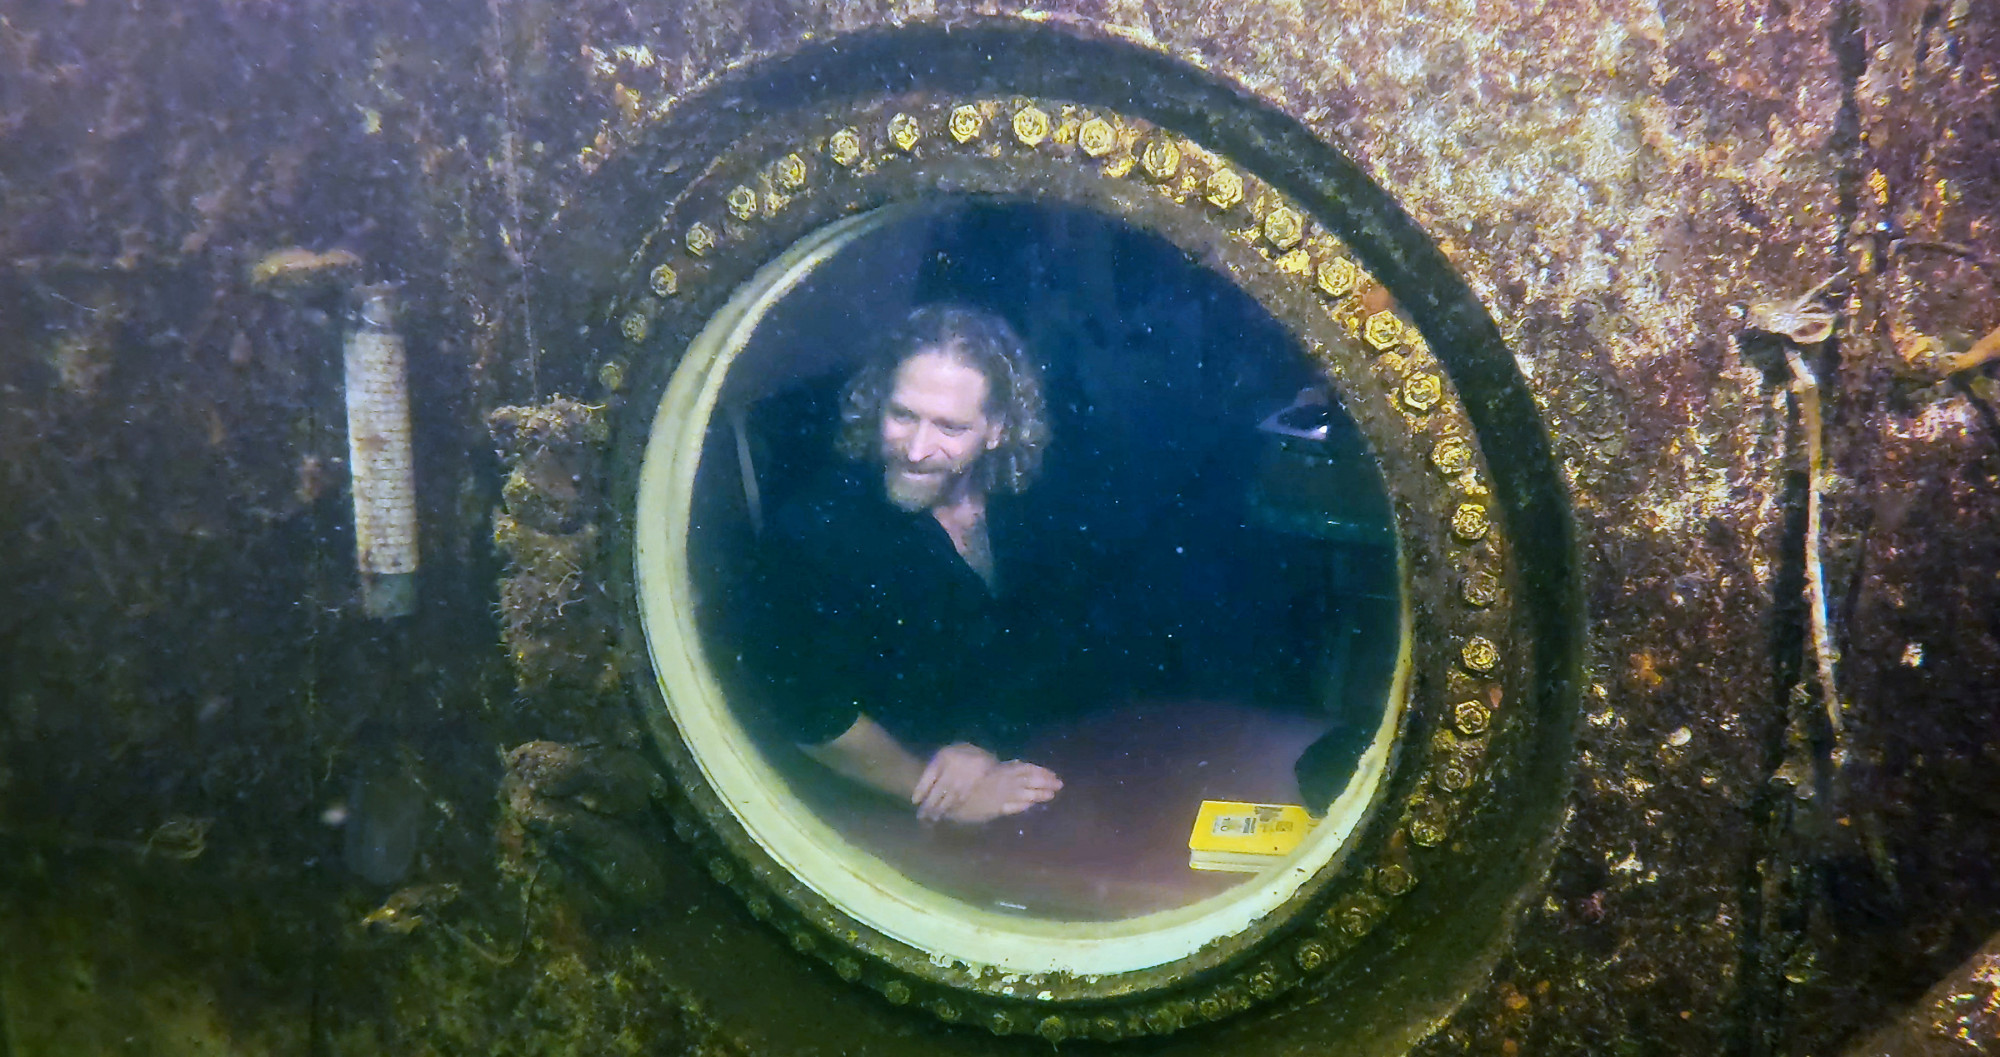 Egy amerikai professzor 74 napja él a víz alatt